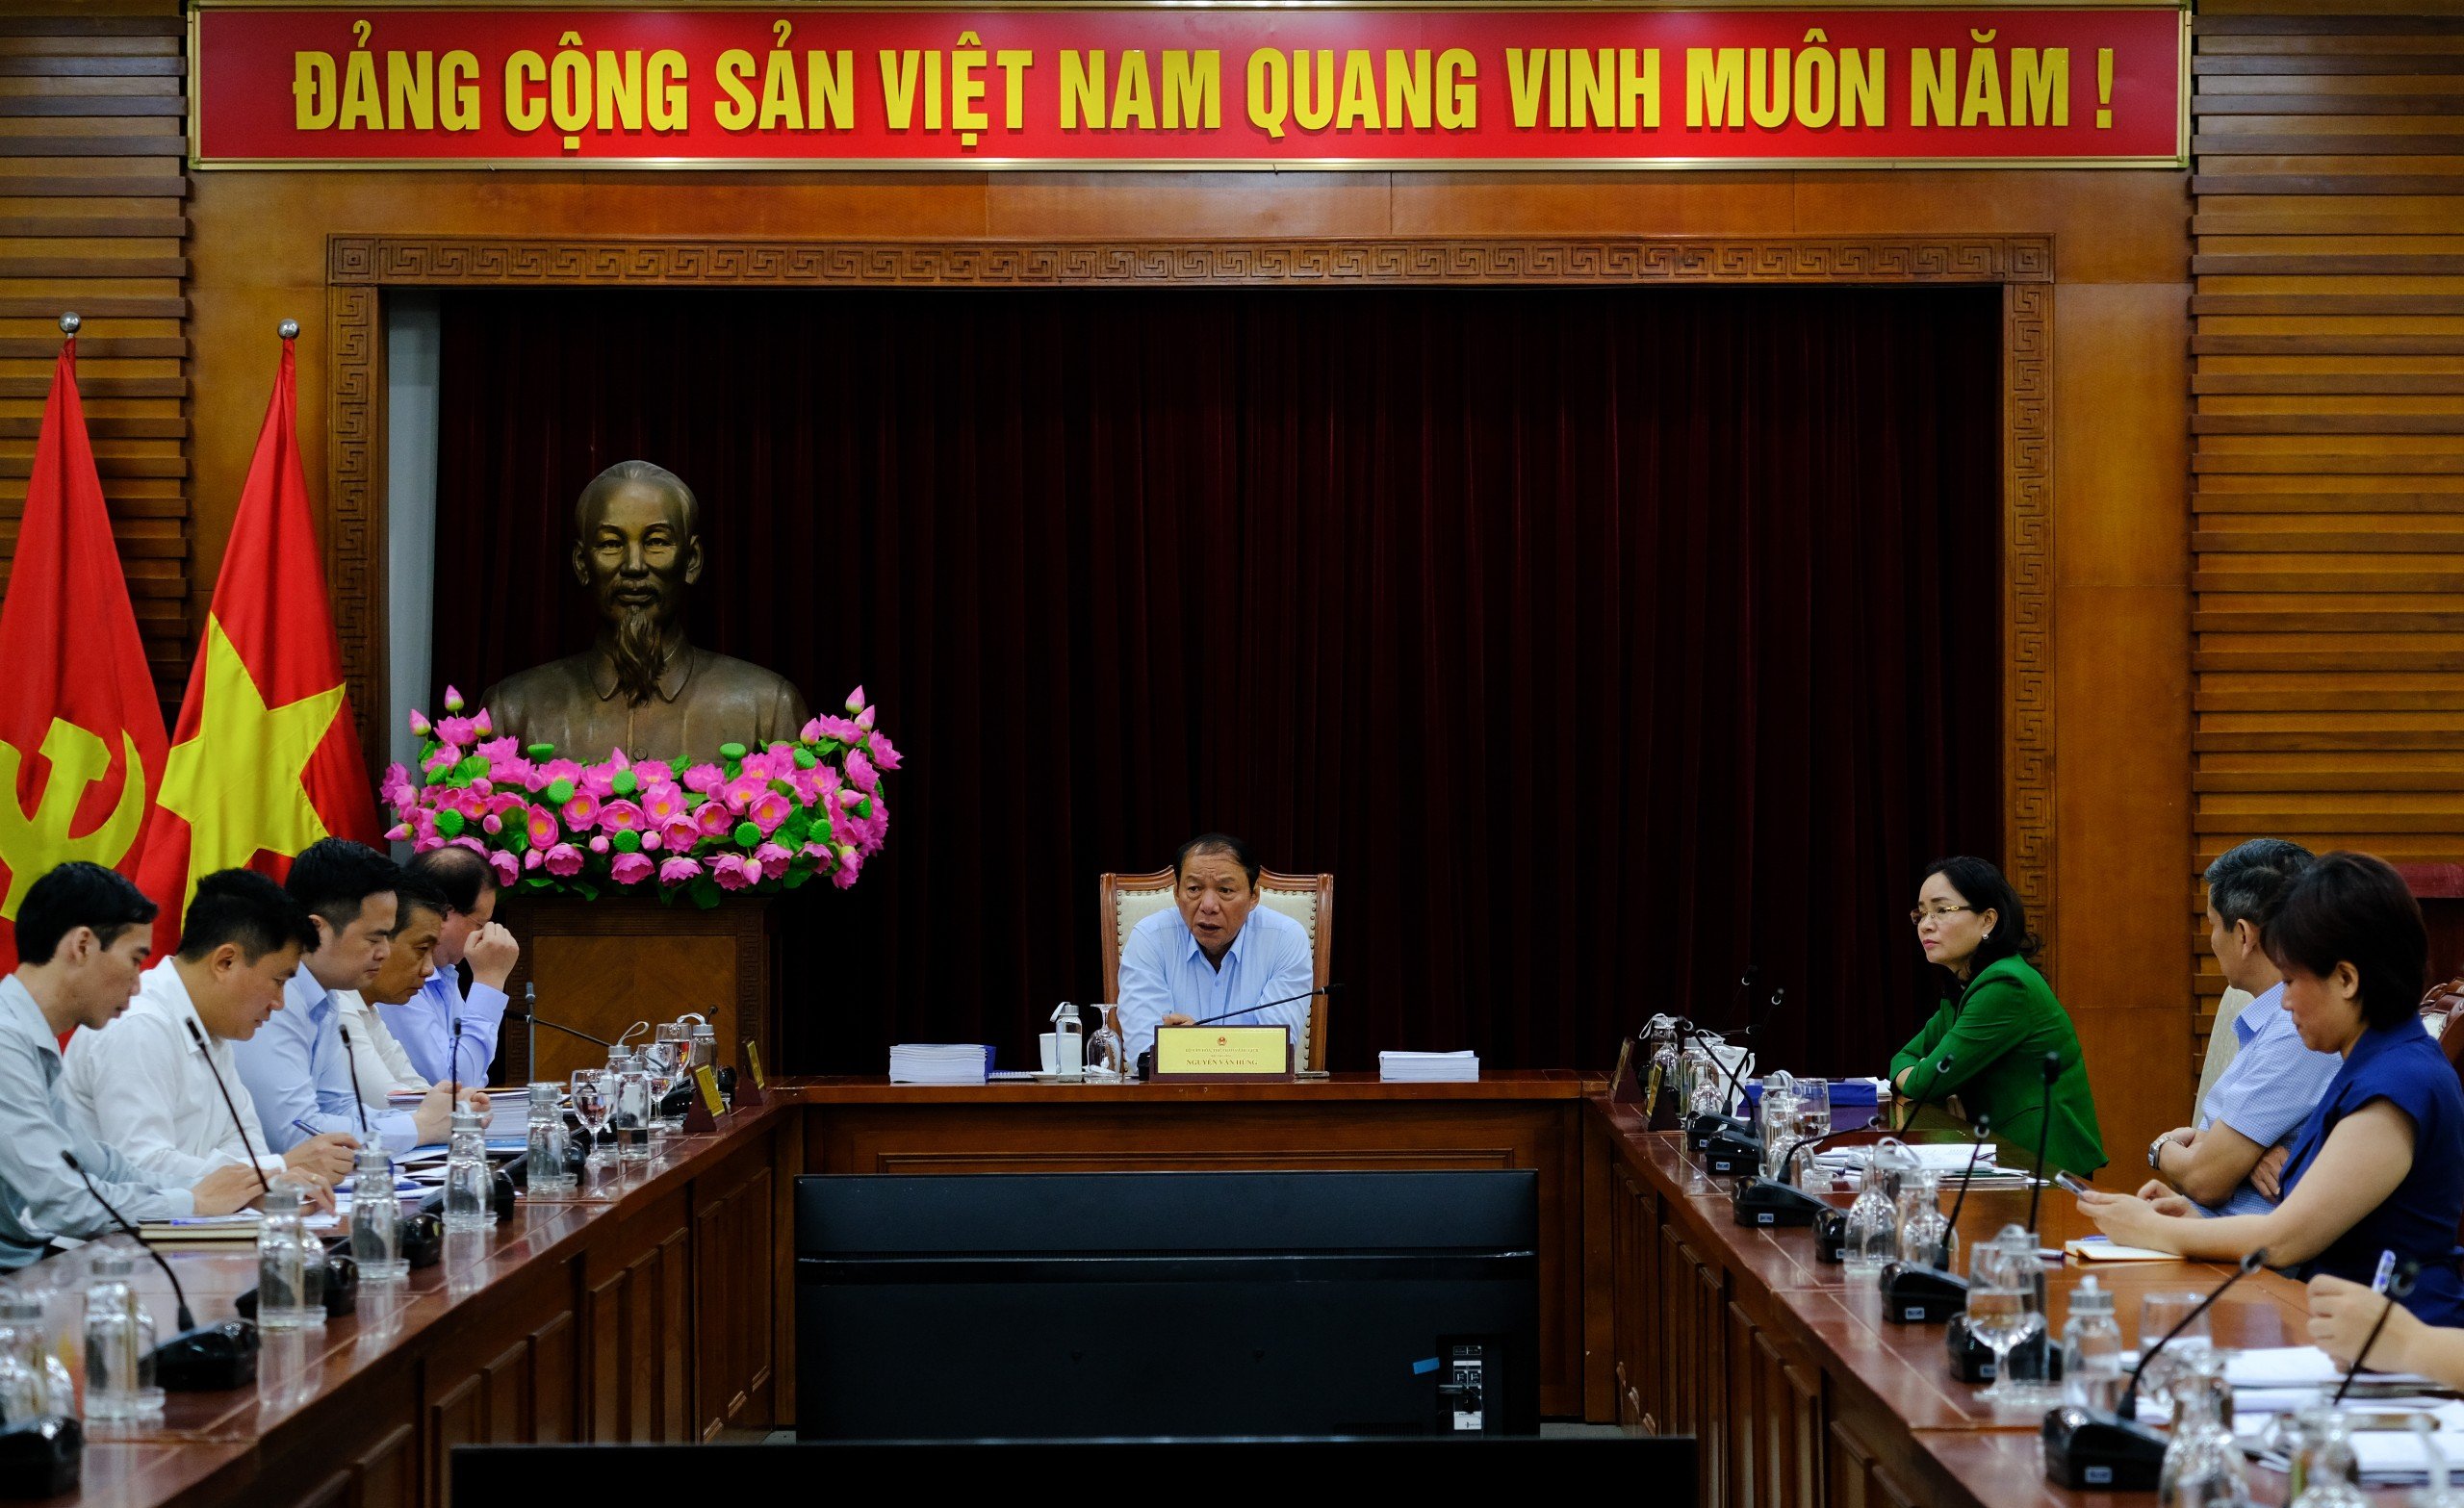 Bộ trưởng Nguyễn Văn Hùng: Chương trình nghệ thuật đặc biệt kỷ niệm 70 năm chiến thắng Điện Biên Phủ phải đảm bảo tính chính trị và nghệ thuật cao - Ảnh 1.